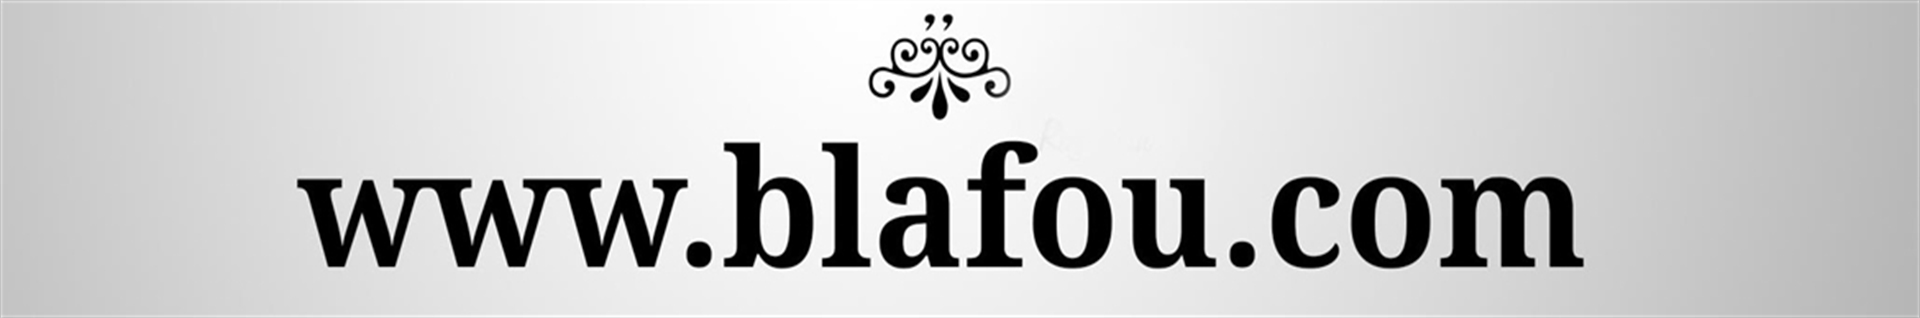 blafou.com